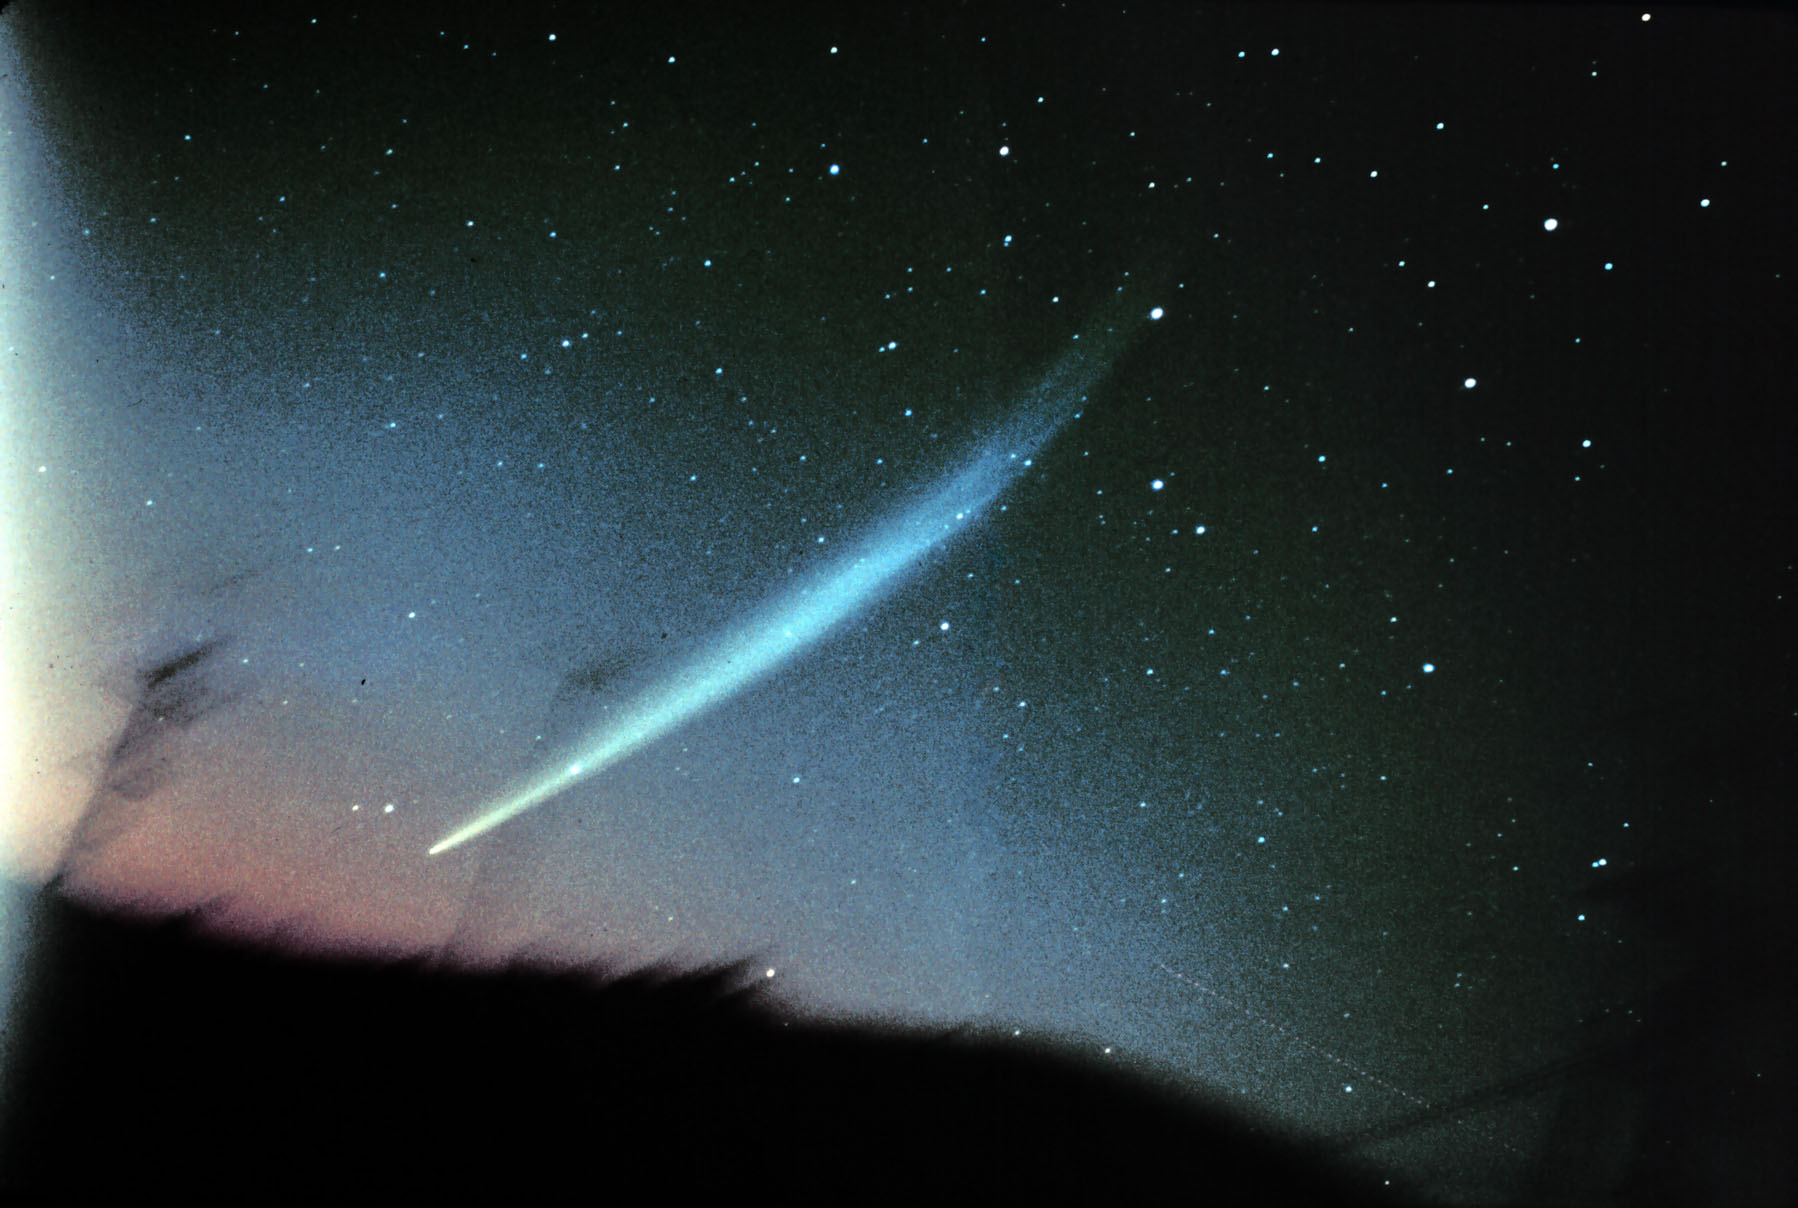 Почему у кометы хвост